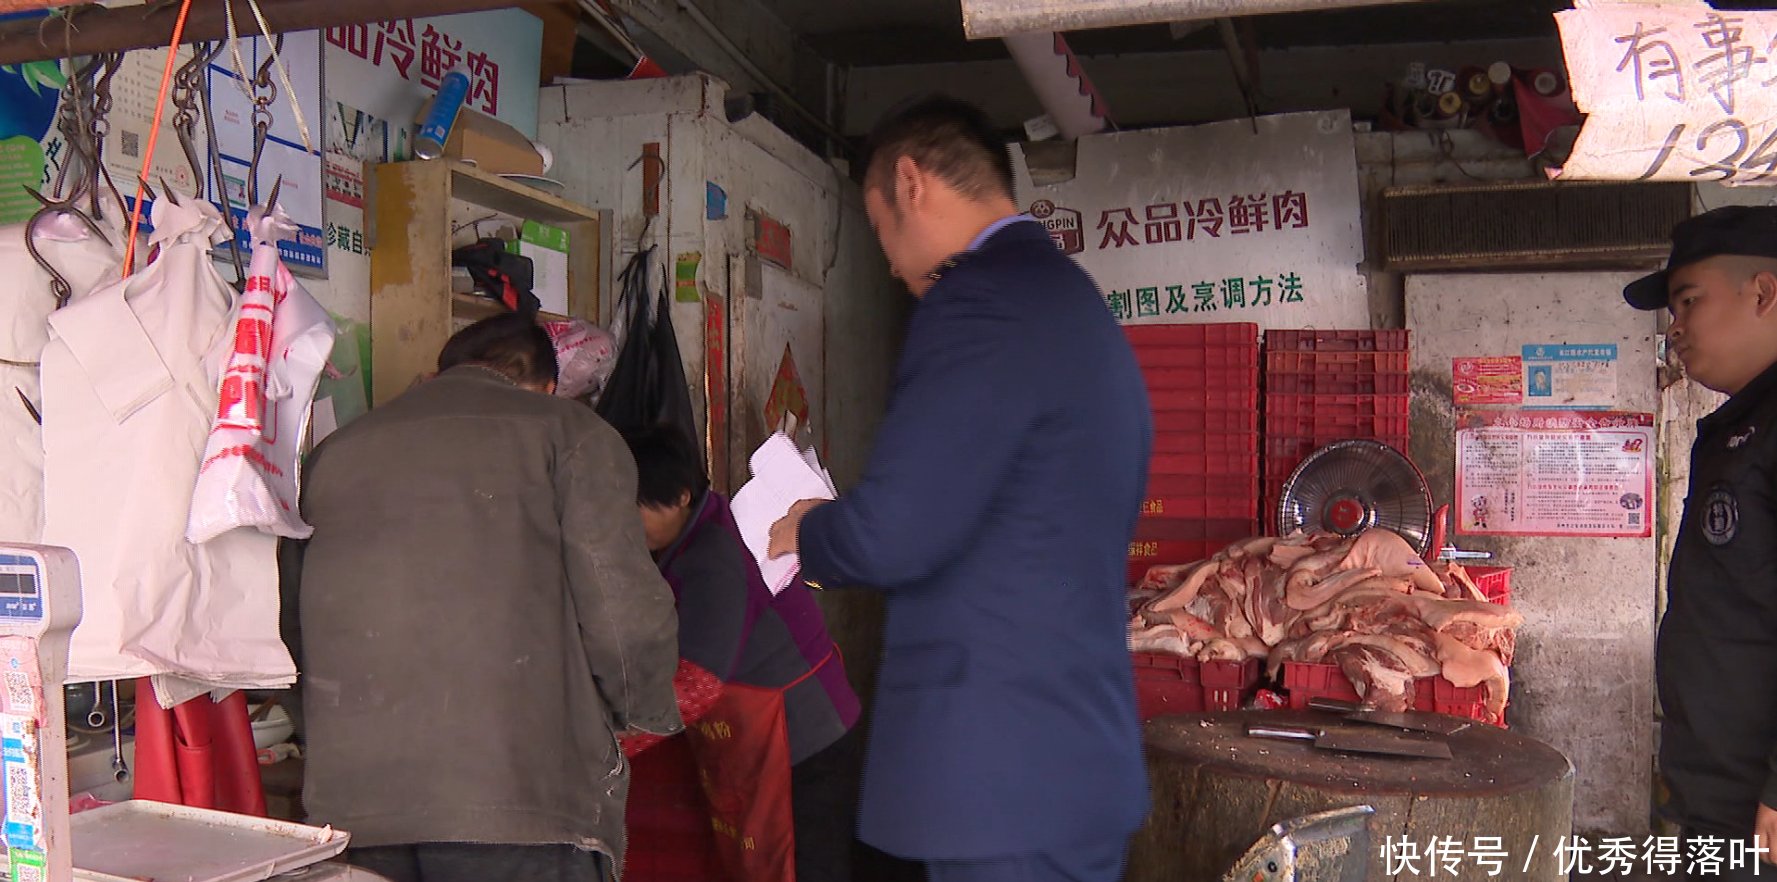 苏州长江路农副产品批发市场猪肉已变质 80头